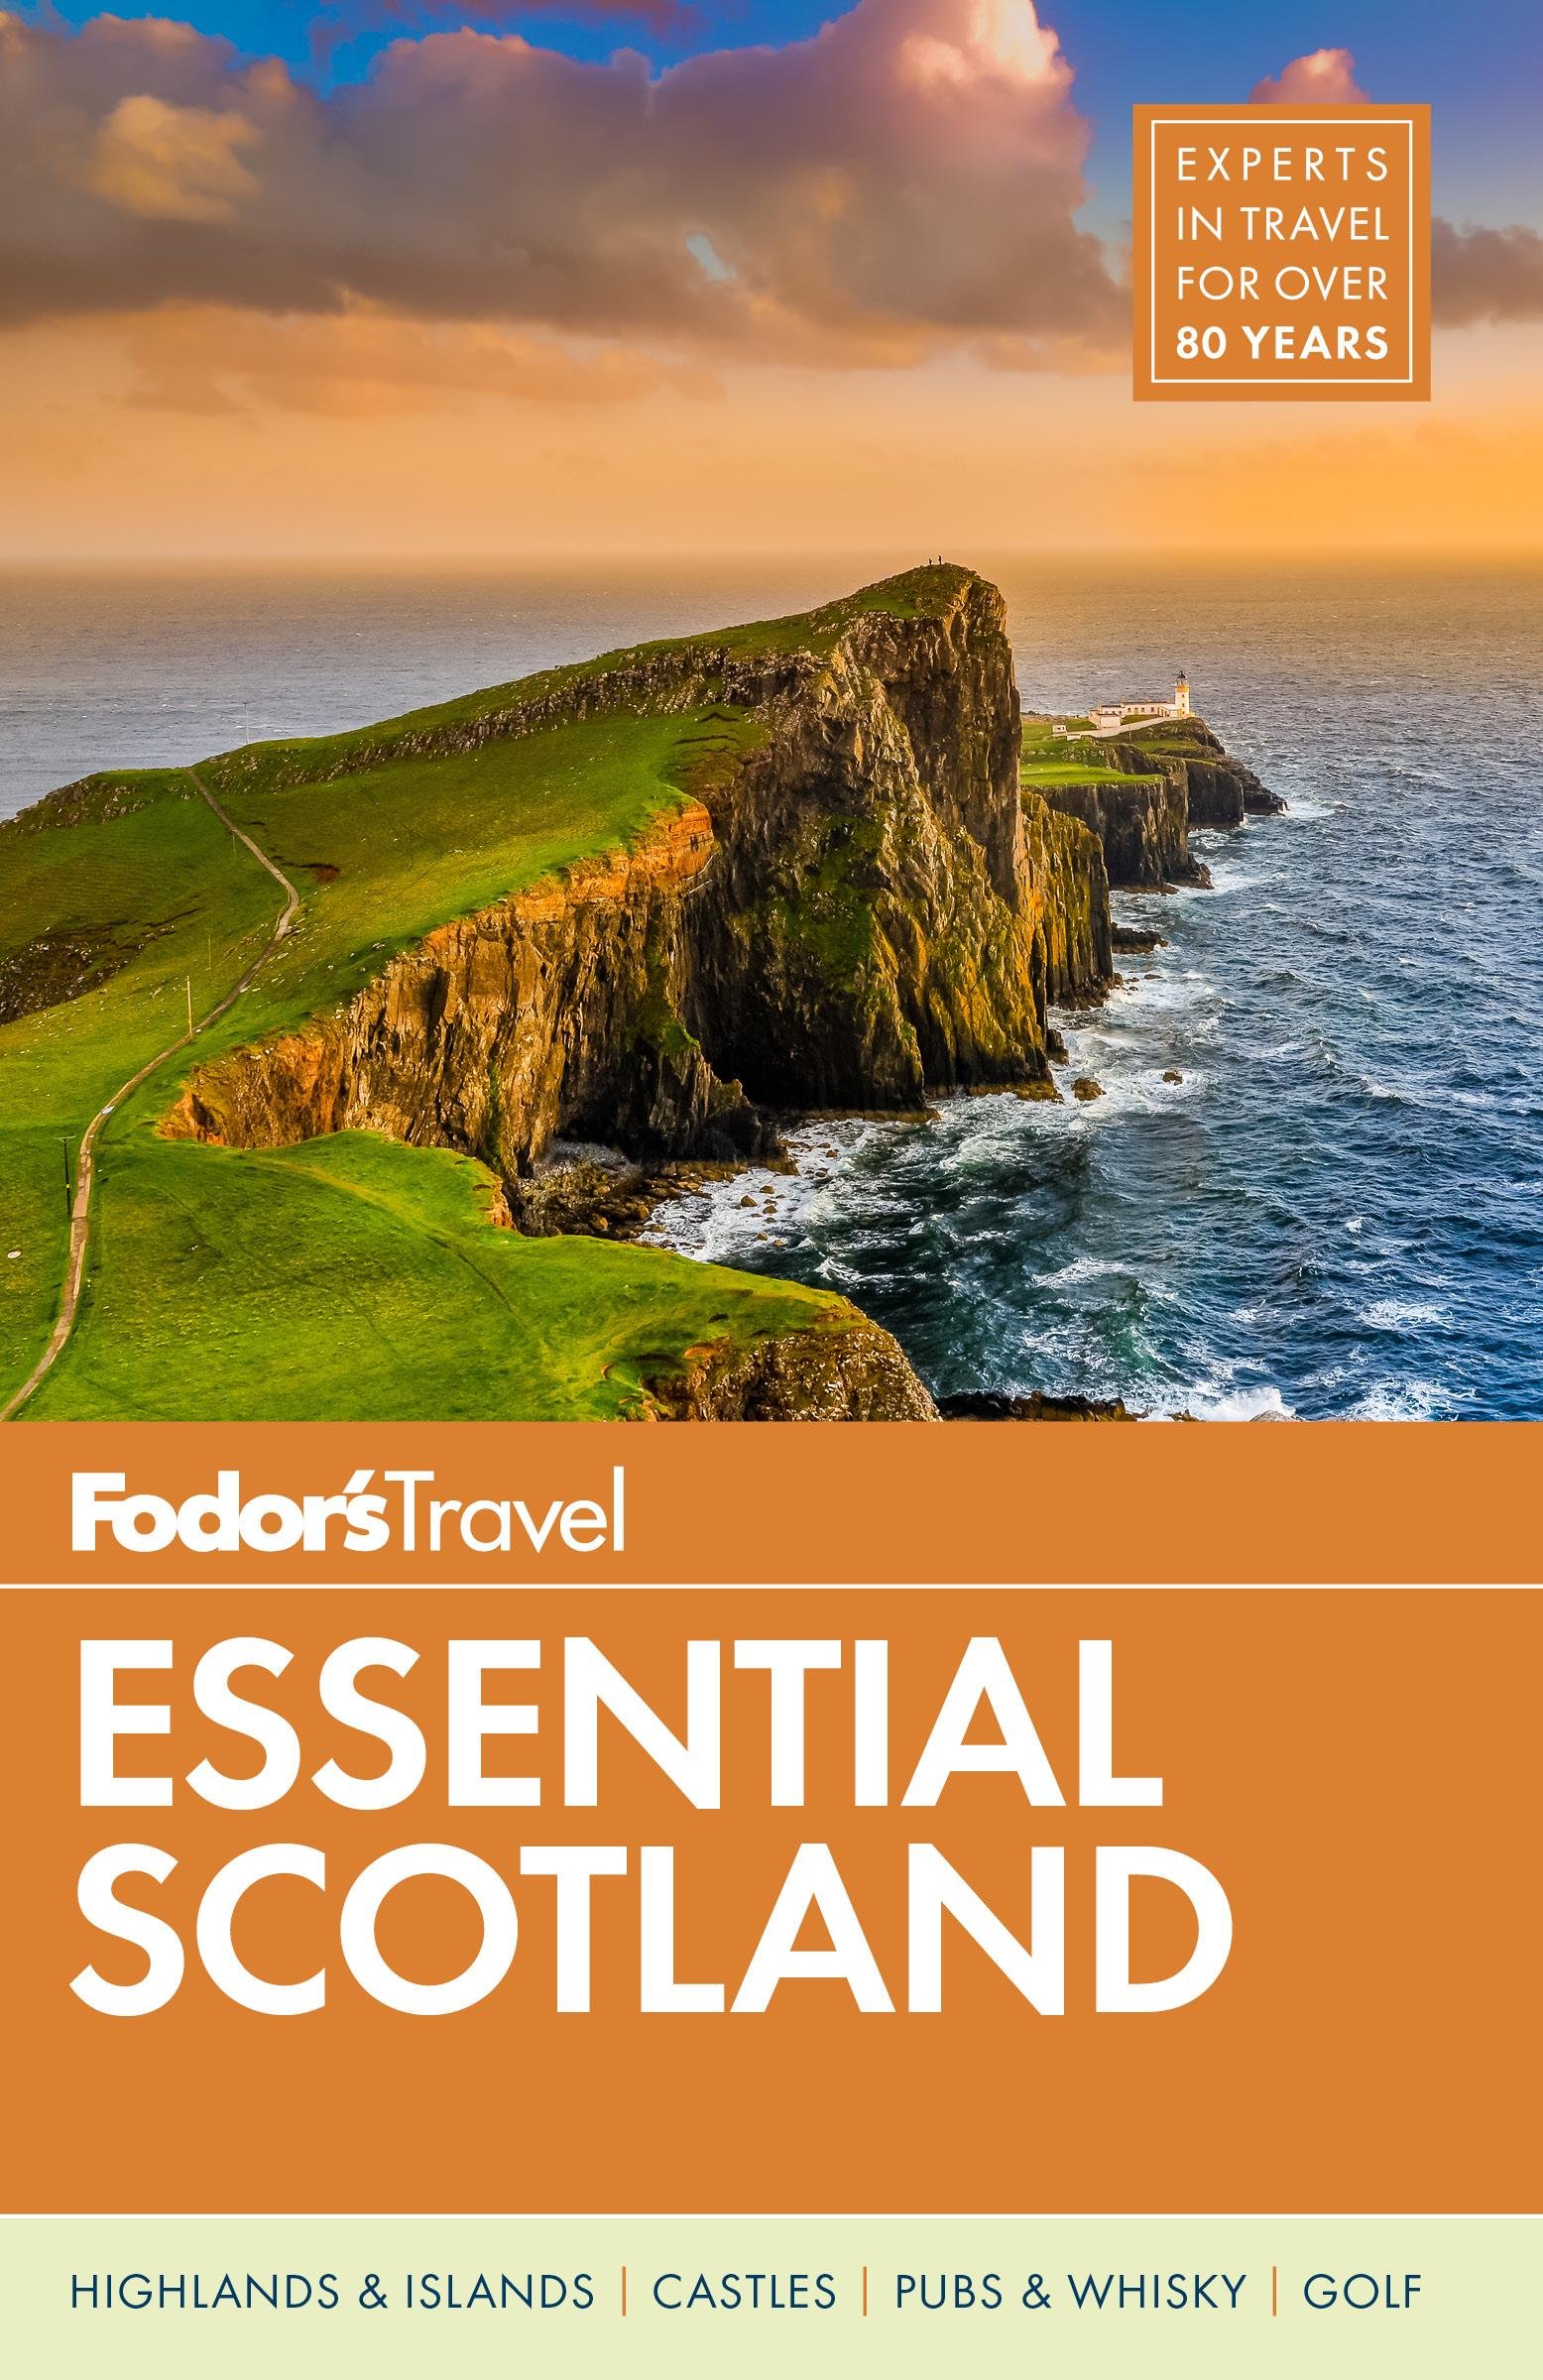 fodor's scotland travel guide